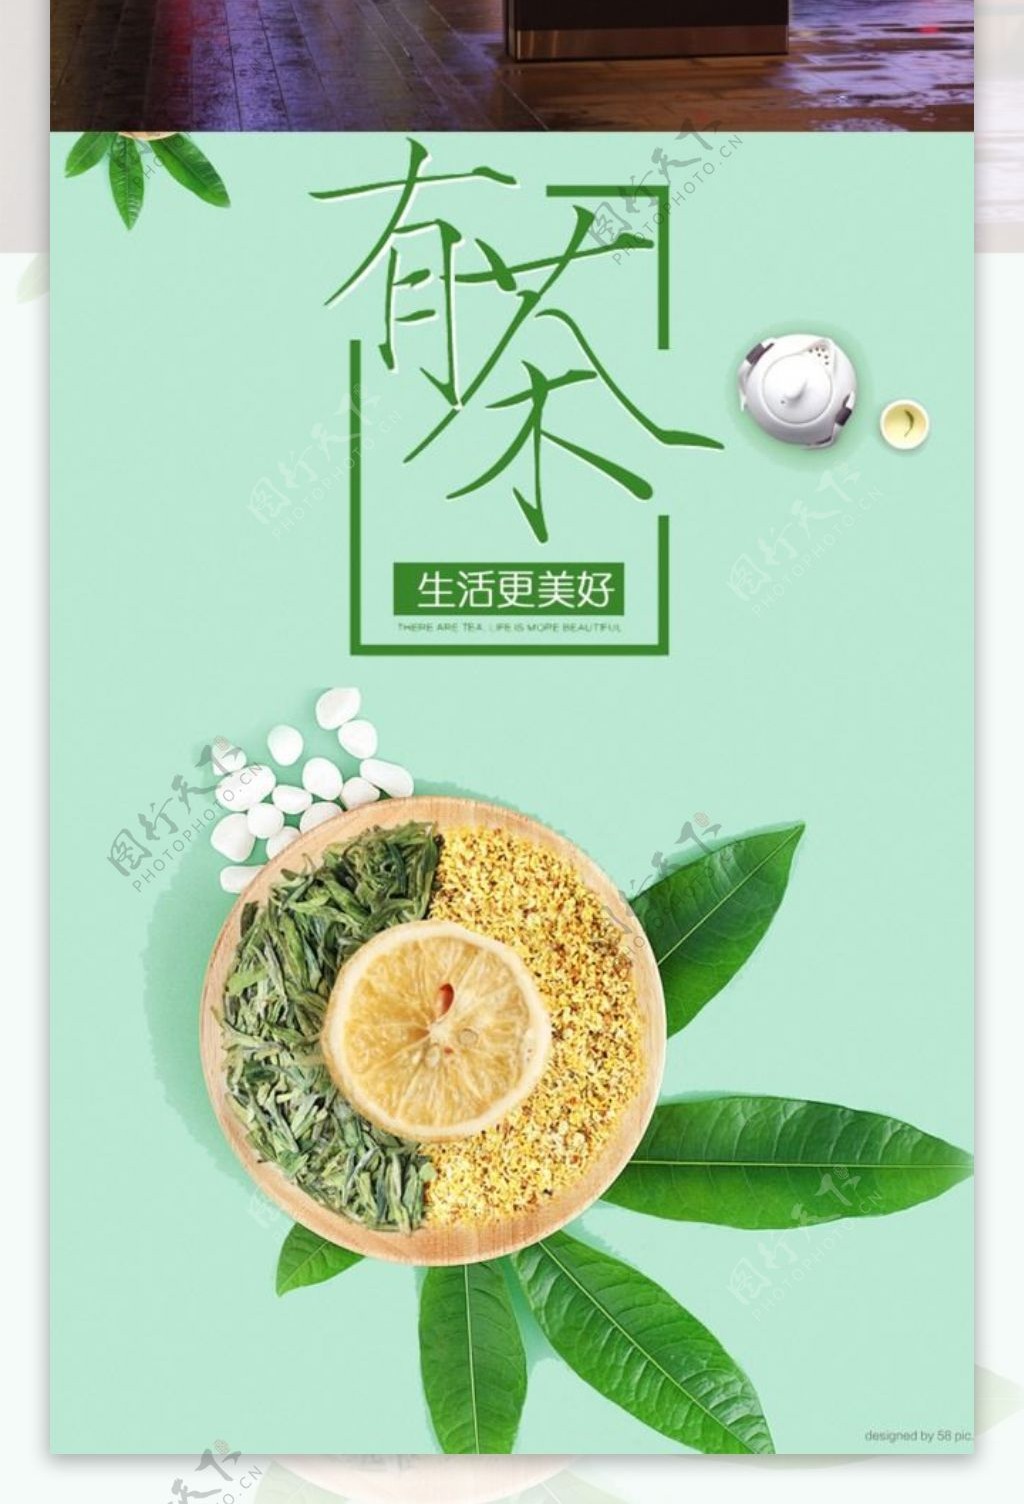 有茶生活更美好茶文化茶叶绿色清新海报